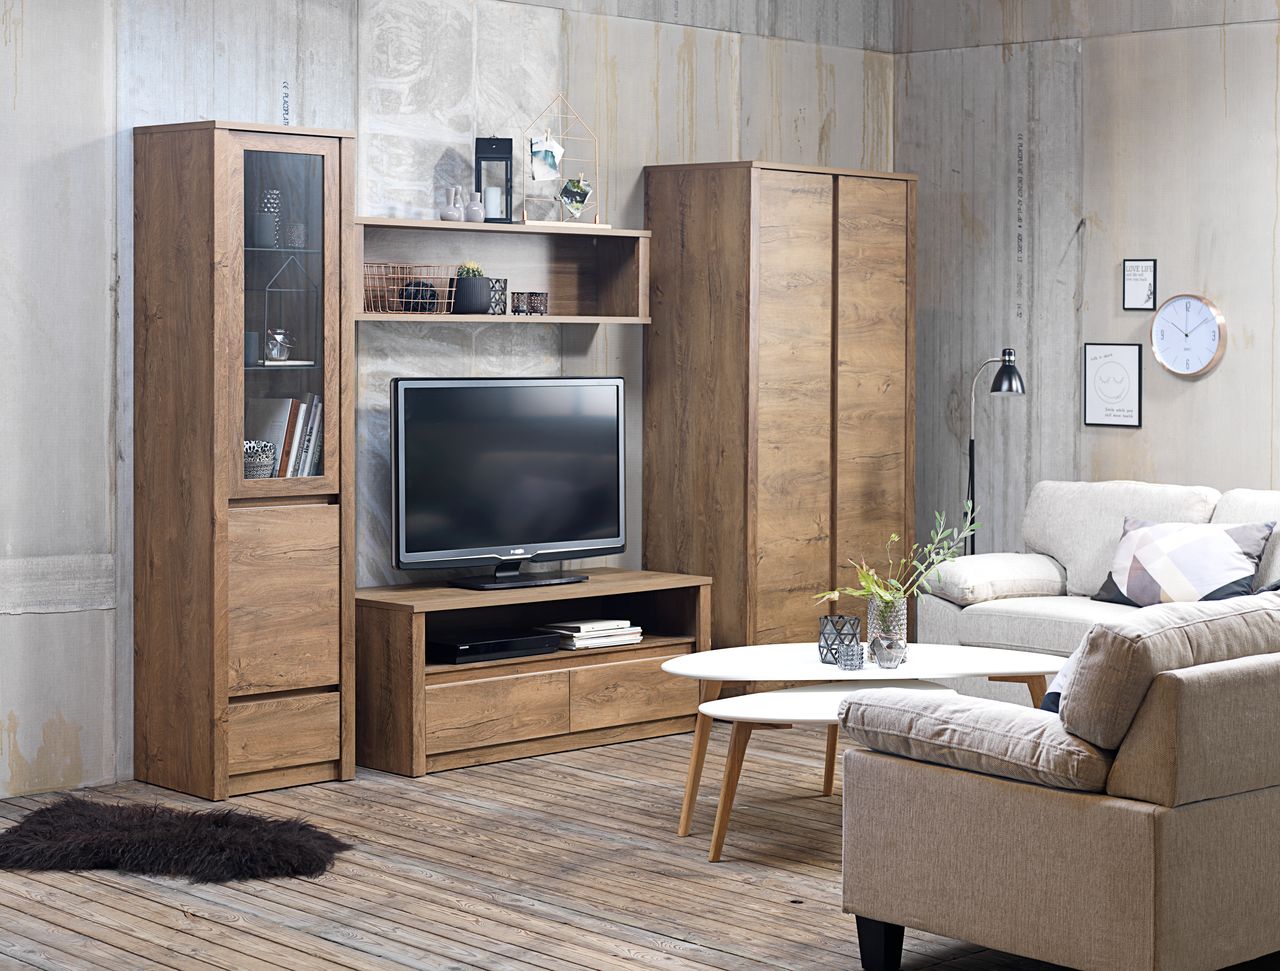 Mẫu căn hộ phong cách Scandinavian với sofa chữ L và kệ tivi gỗ hiện đại